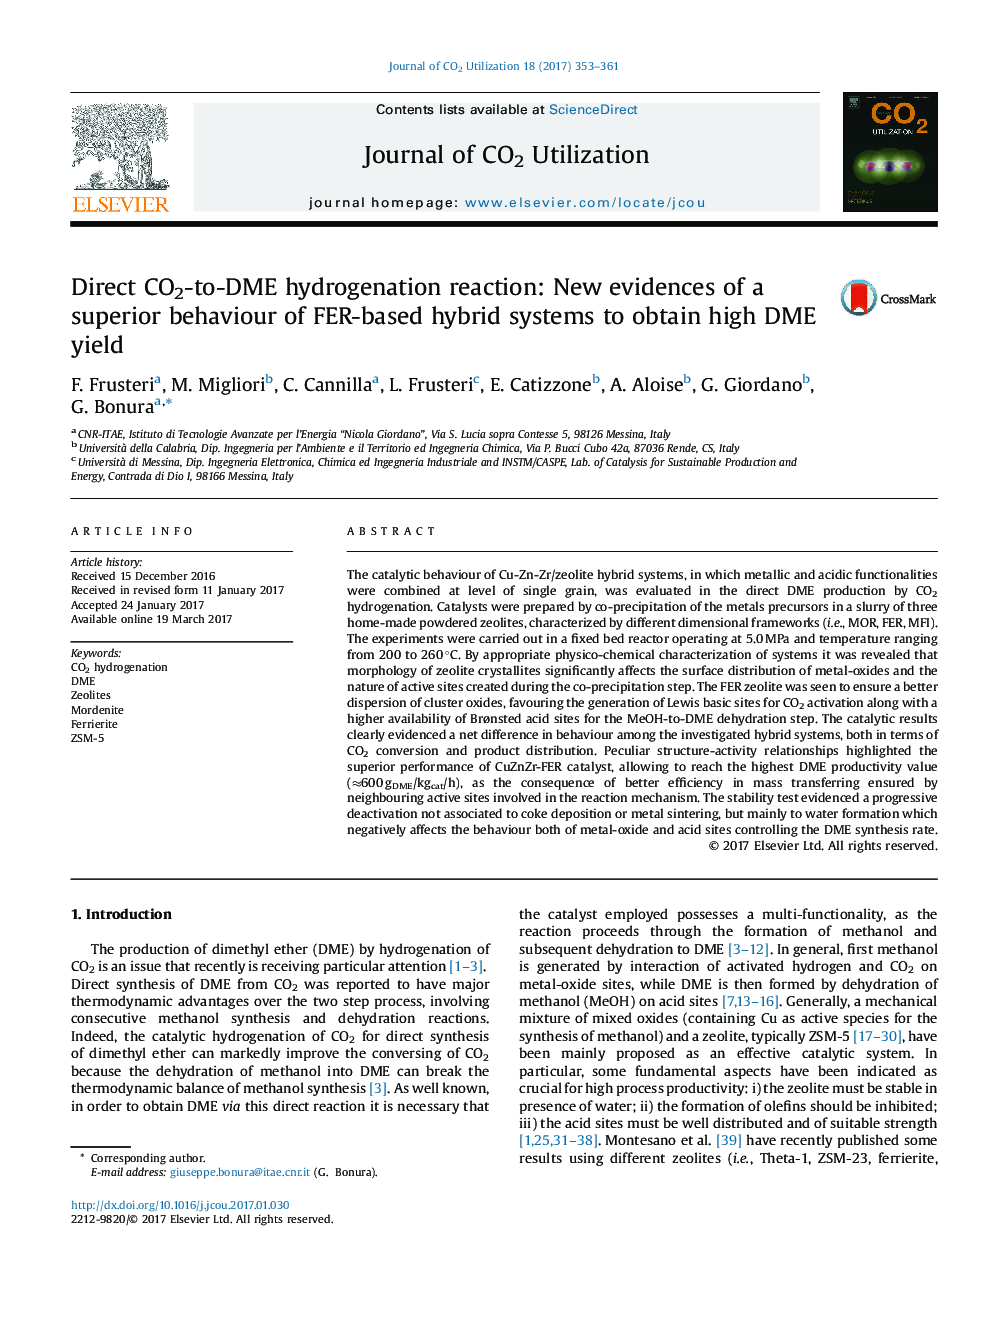 واکنش هیدروژناسیون مستقیم CO2 به DME: شواهد جدید از رفتار برتر سیستم های ترکیبی مبتنی بر FER برای به دست آوردن DME بالا